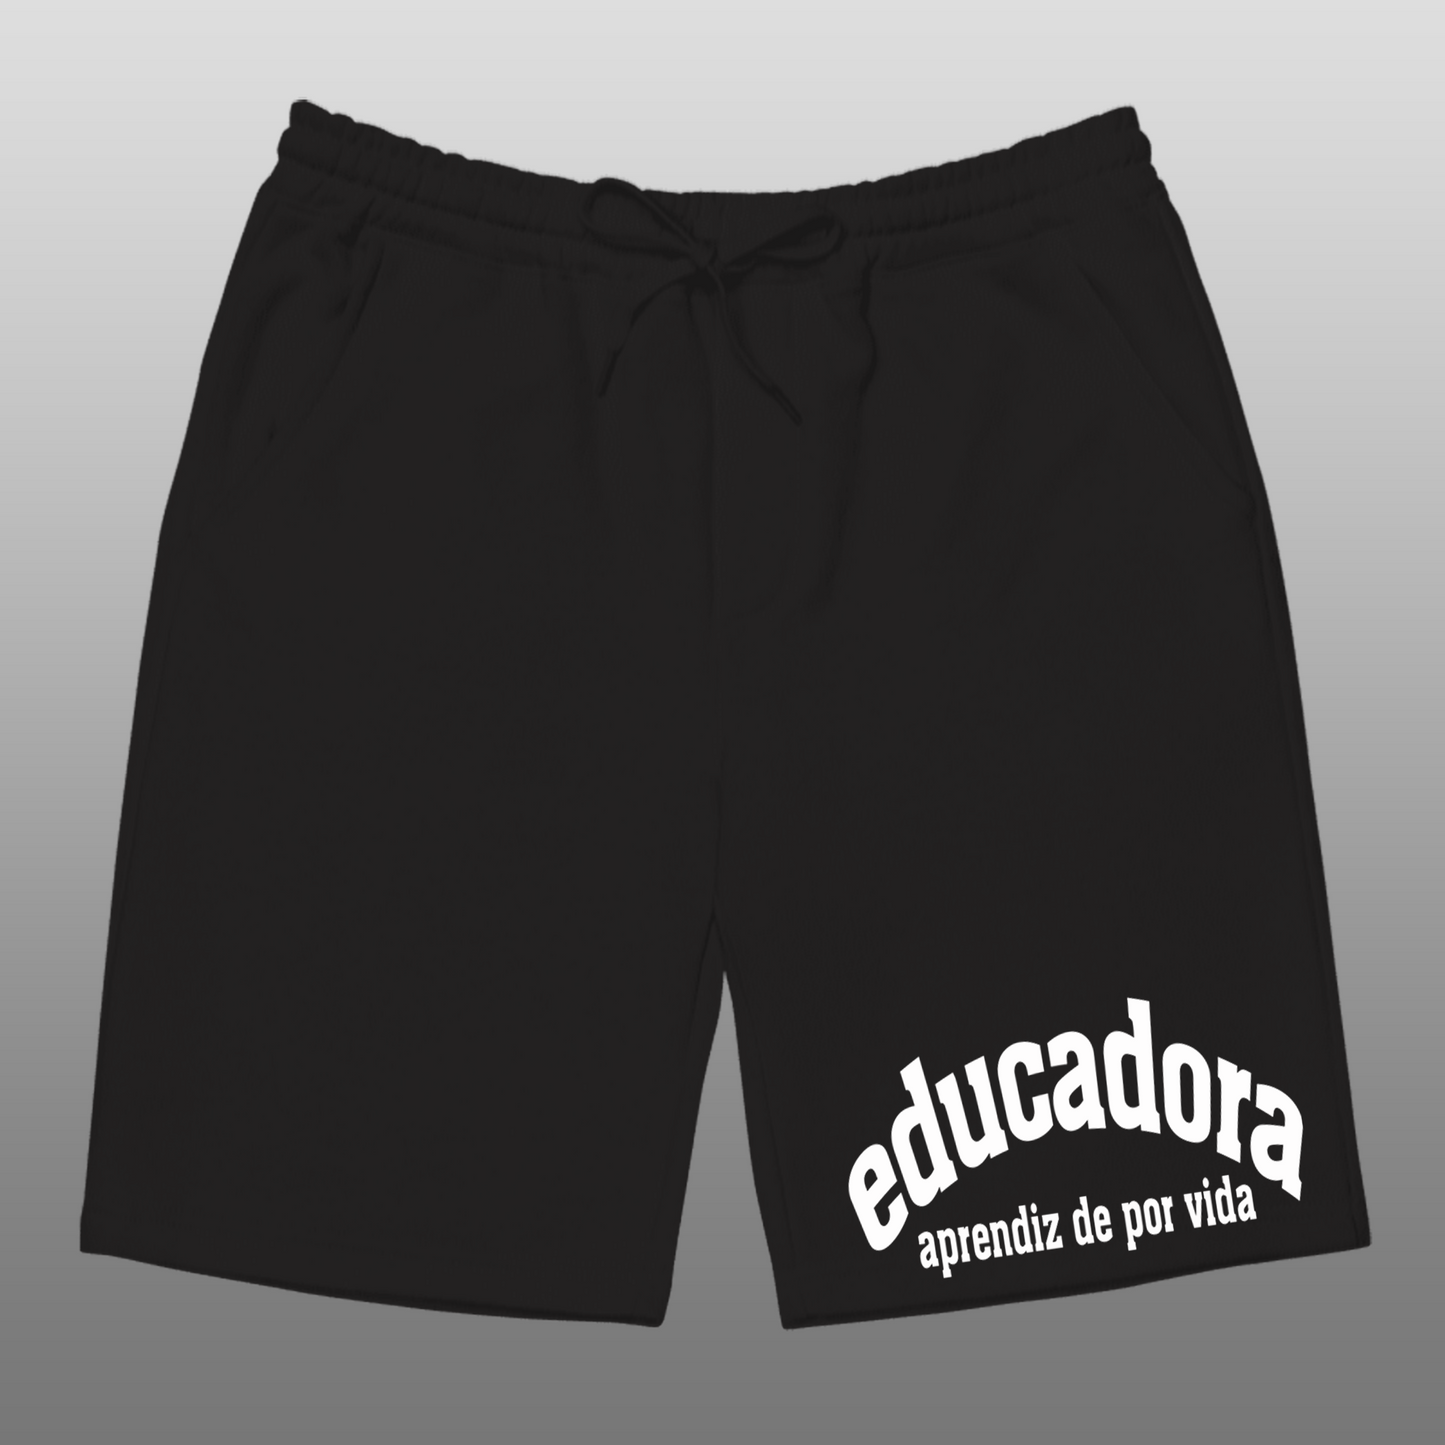 Educator (Spanish) Black Shorts